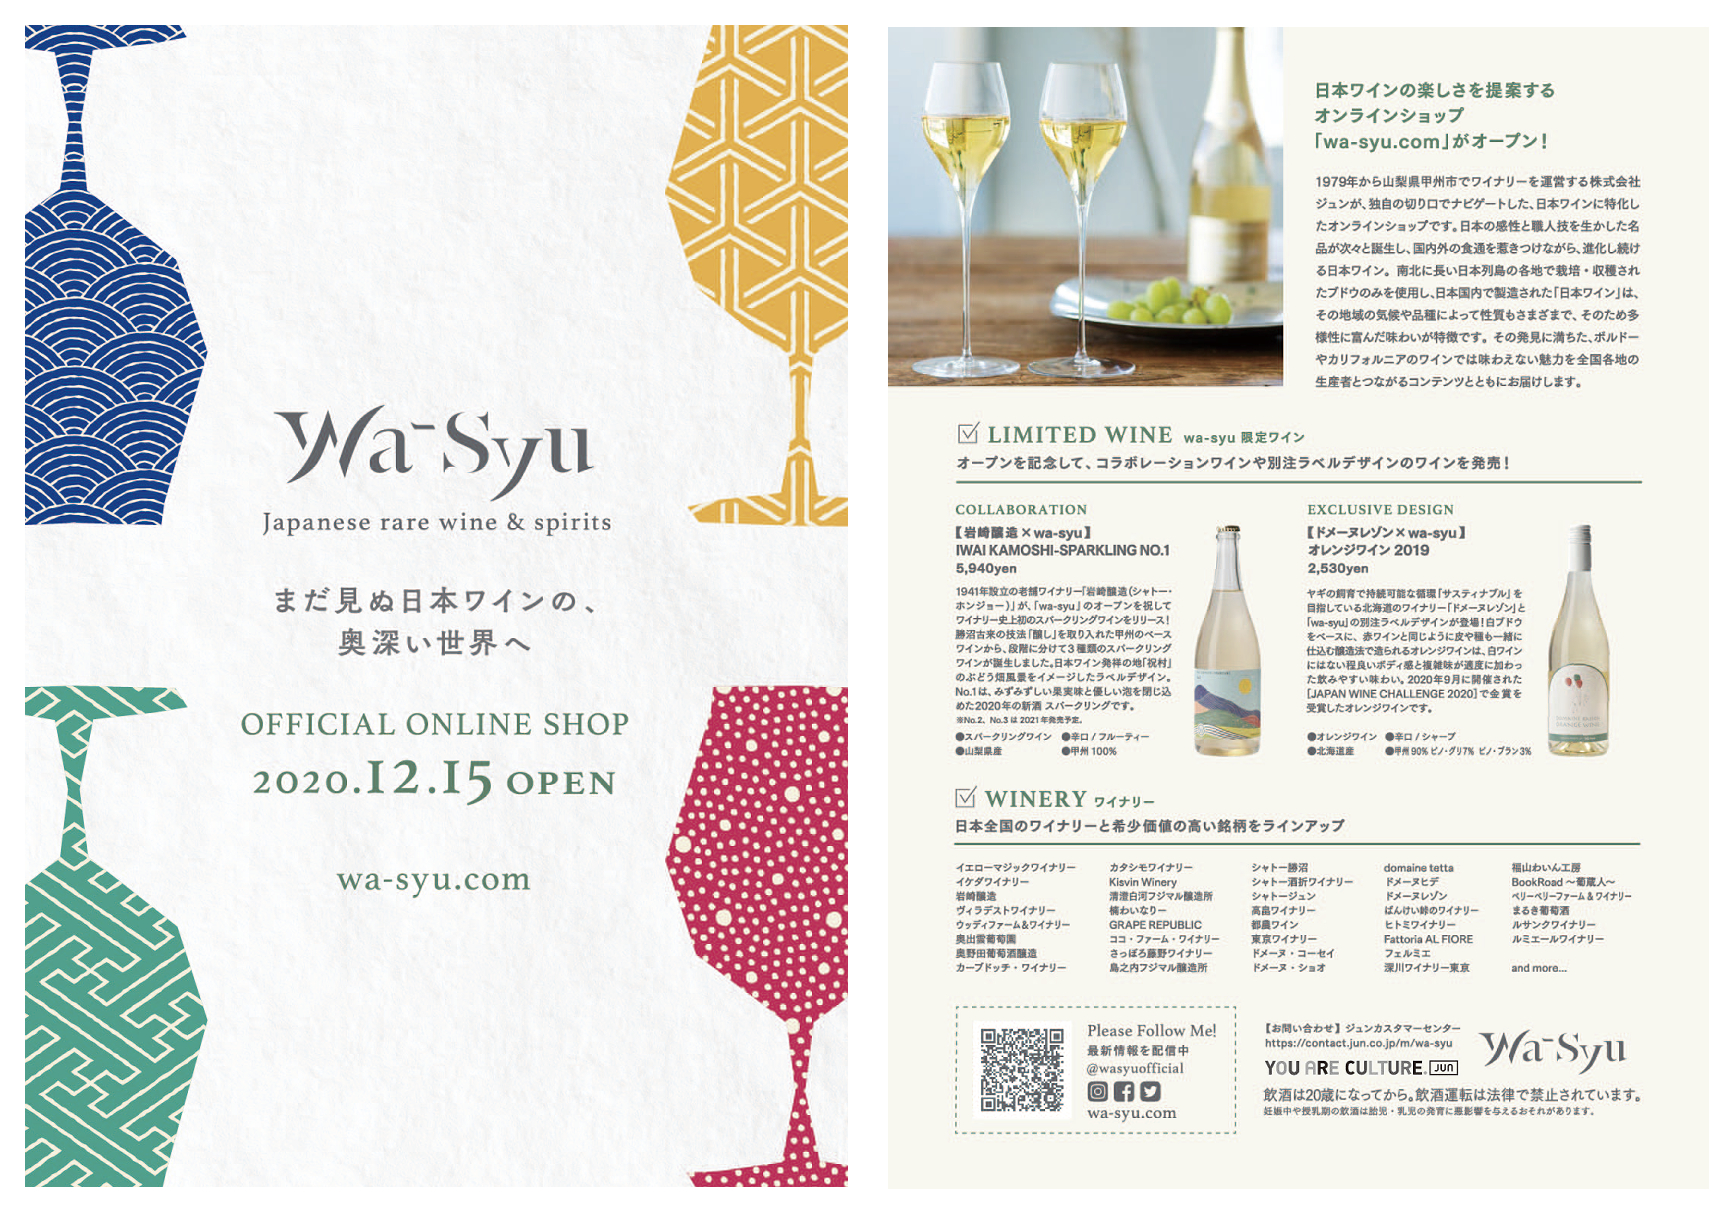 「wa-syu.com」にてルサンクワイナリーのワインをお取り扱いいただくことになりました。